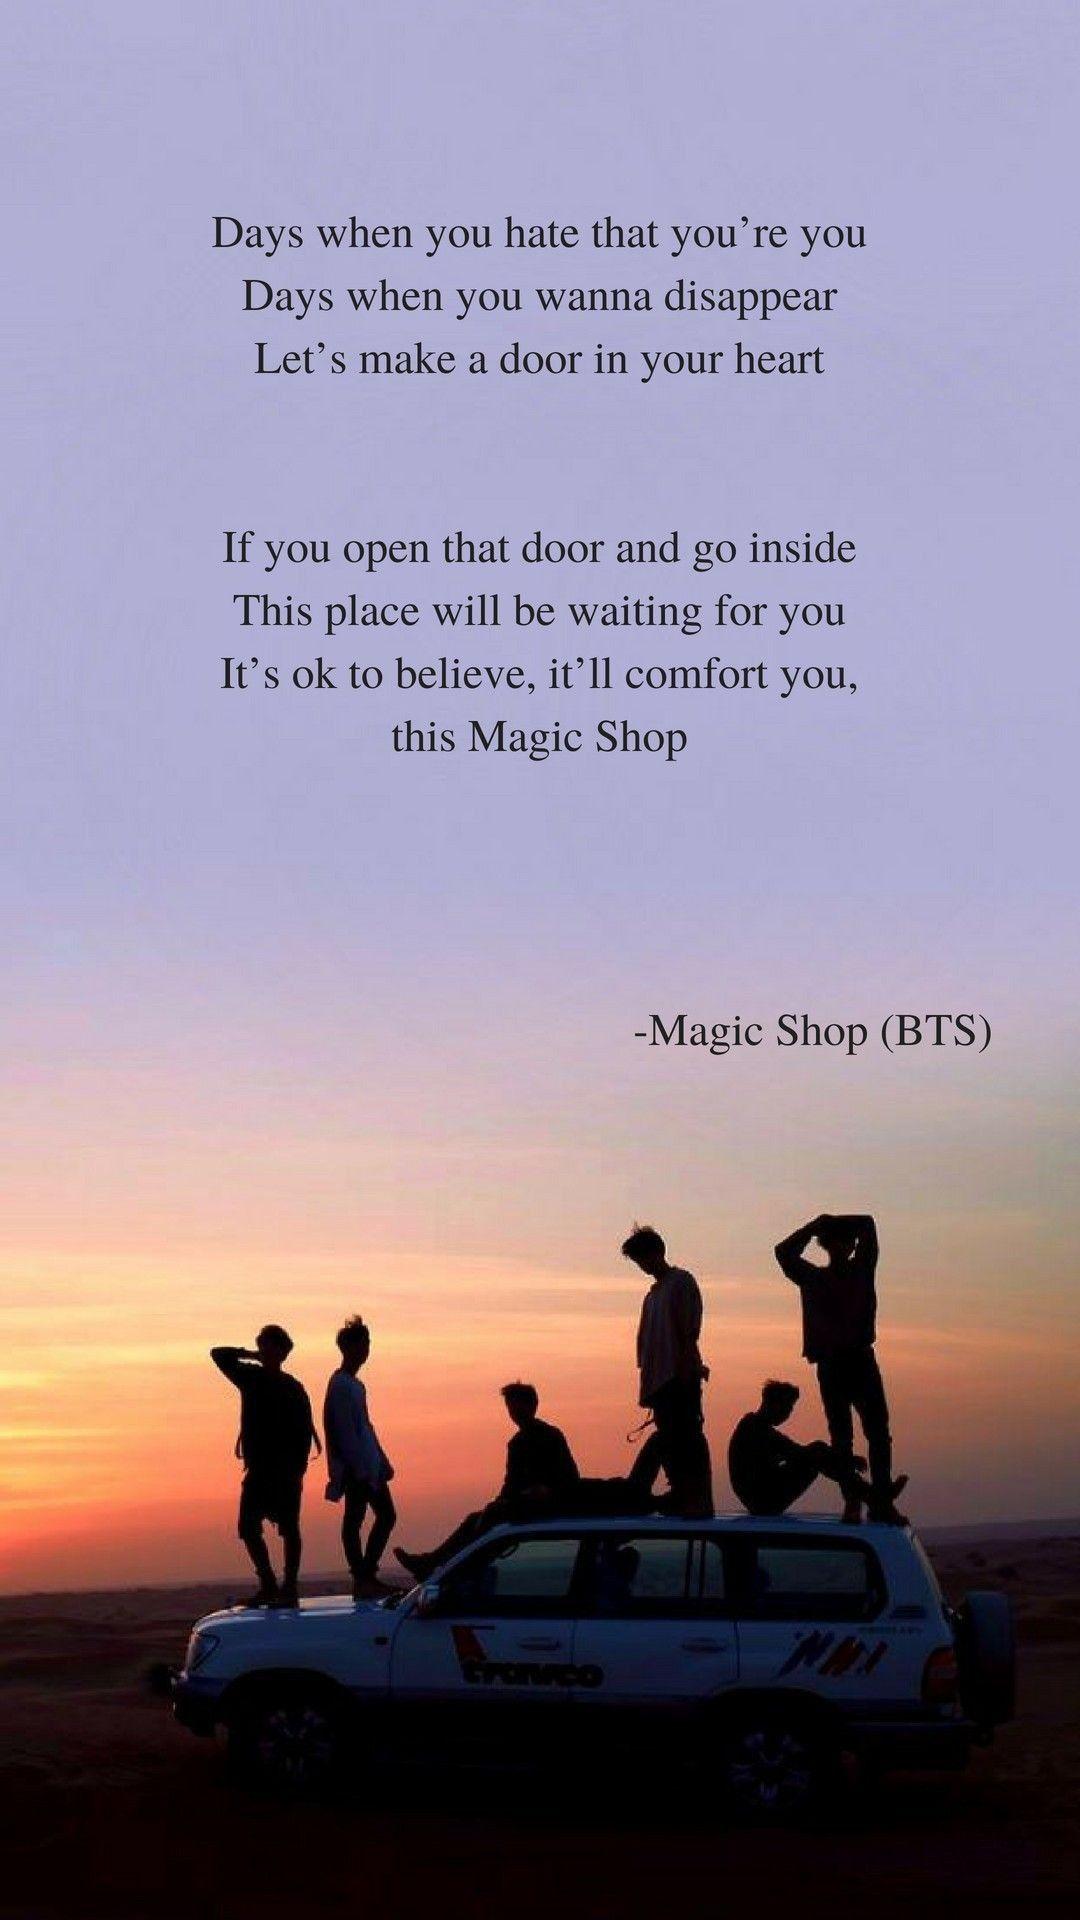 Magic shop by BTS lyrics wallpaper. emotions en 2019. Fond d'écran